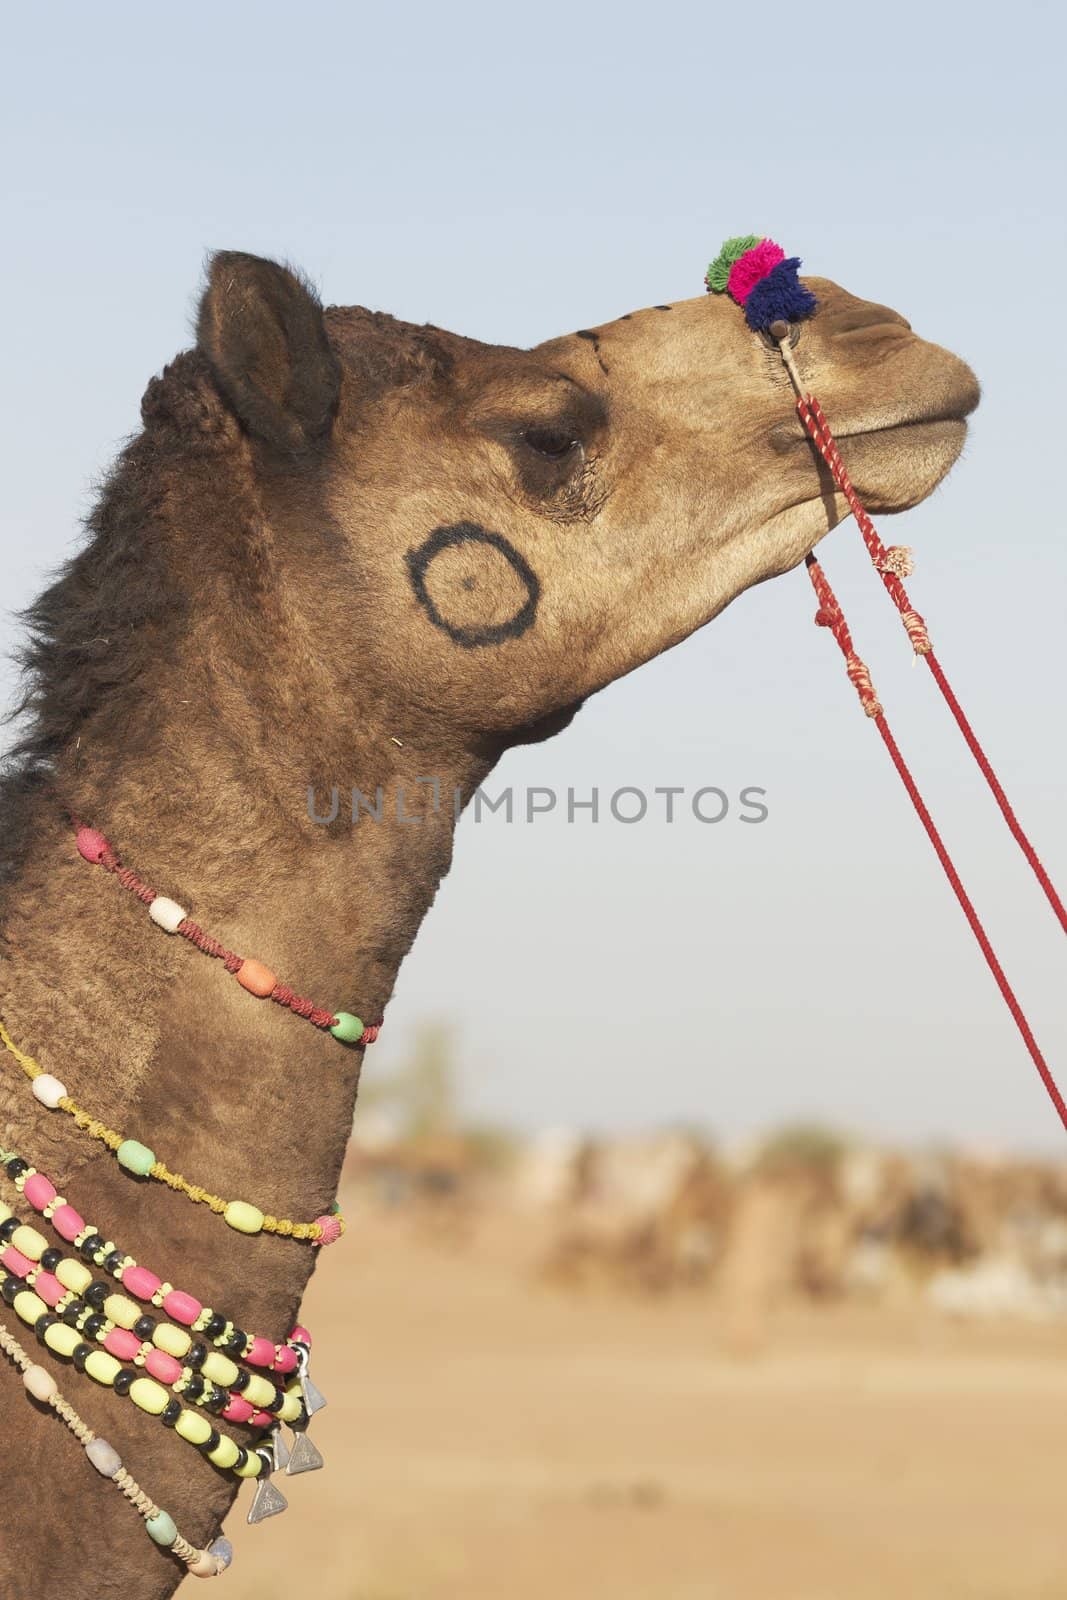 Camel Fair by JeremyRichards